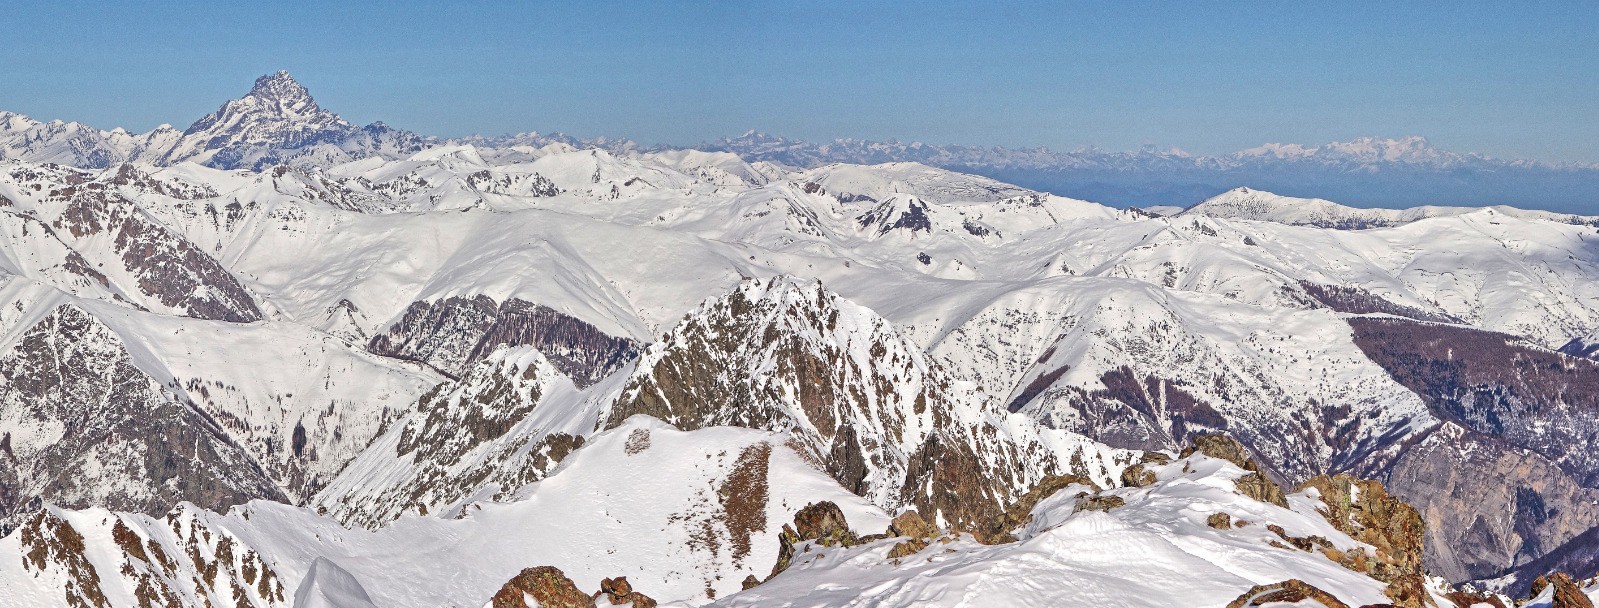 Panorama vers le Nord: 
Vue grandiose sur l'Italie du Mt Viso au Mt Rose distant de 250km !